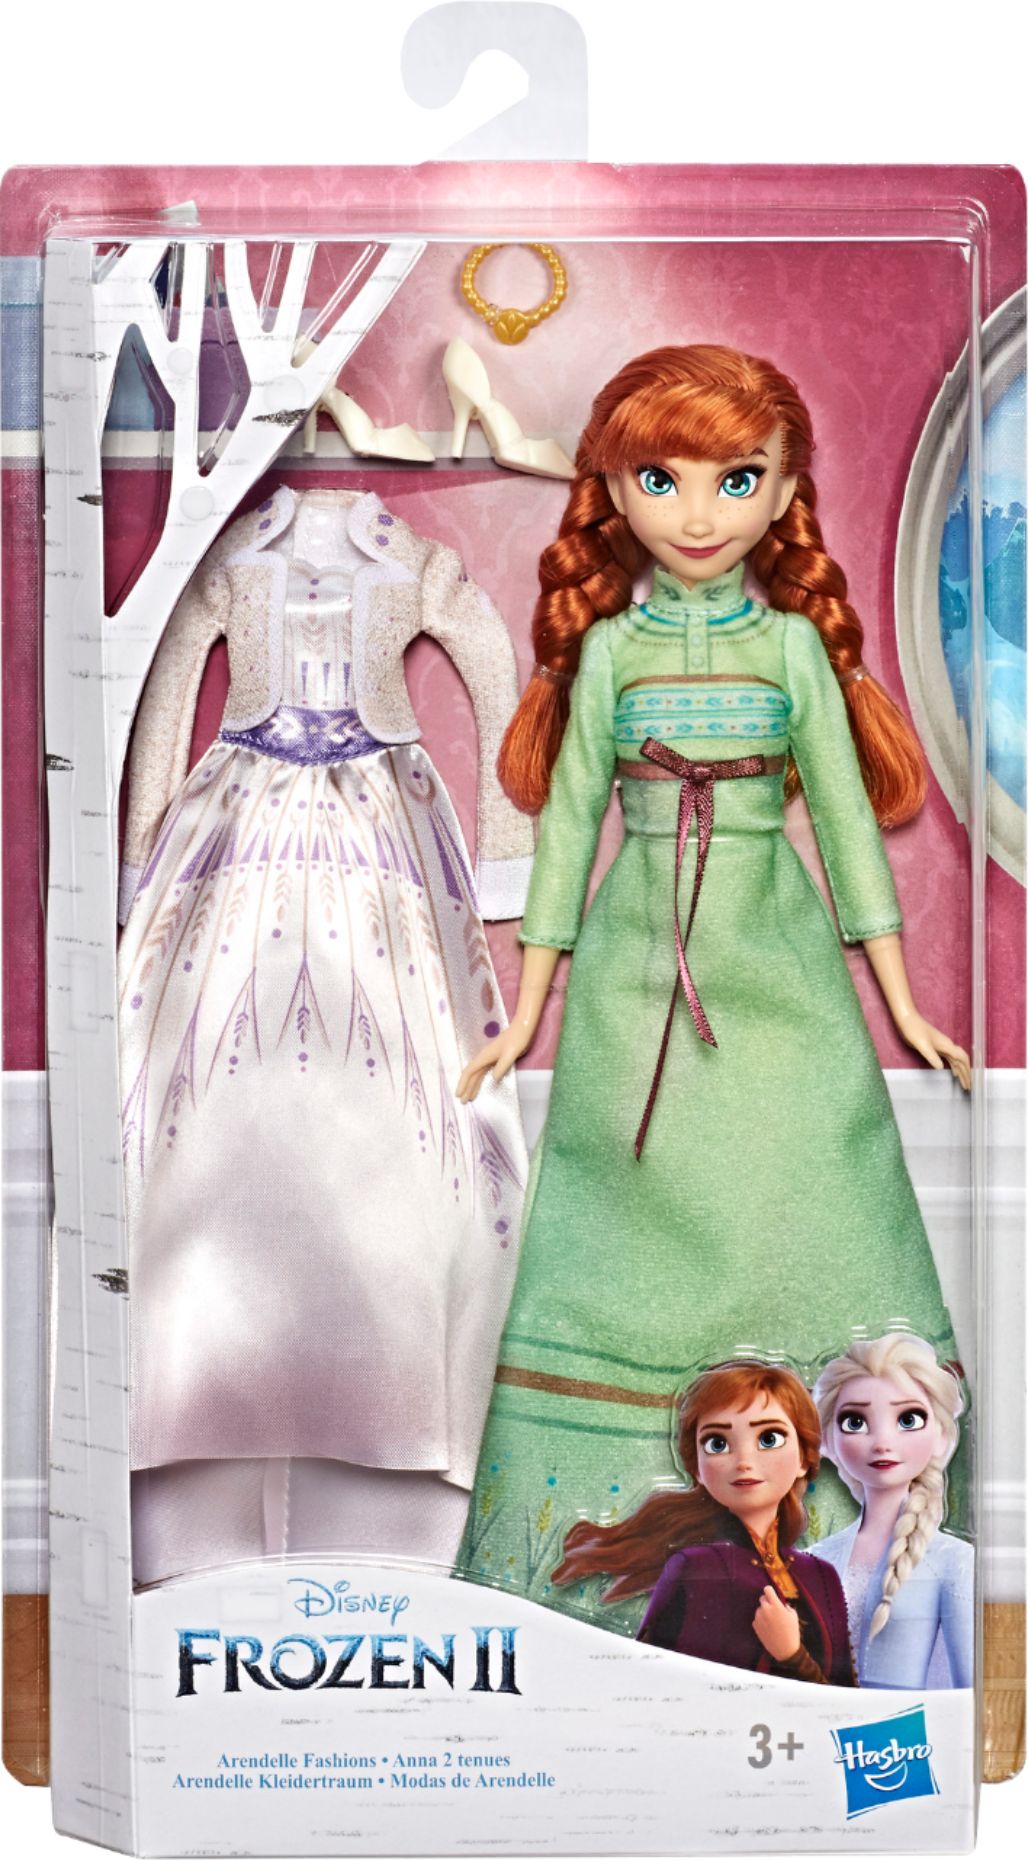 Frozen II Elsa Doll W/ 2 Outfits Purple Dress Arendelle Fashions Disney Kids Toy 